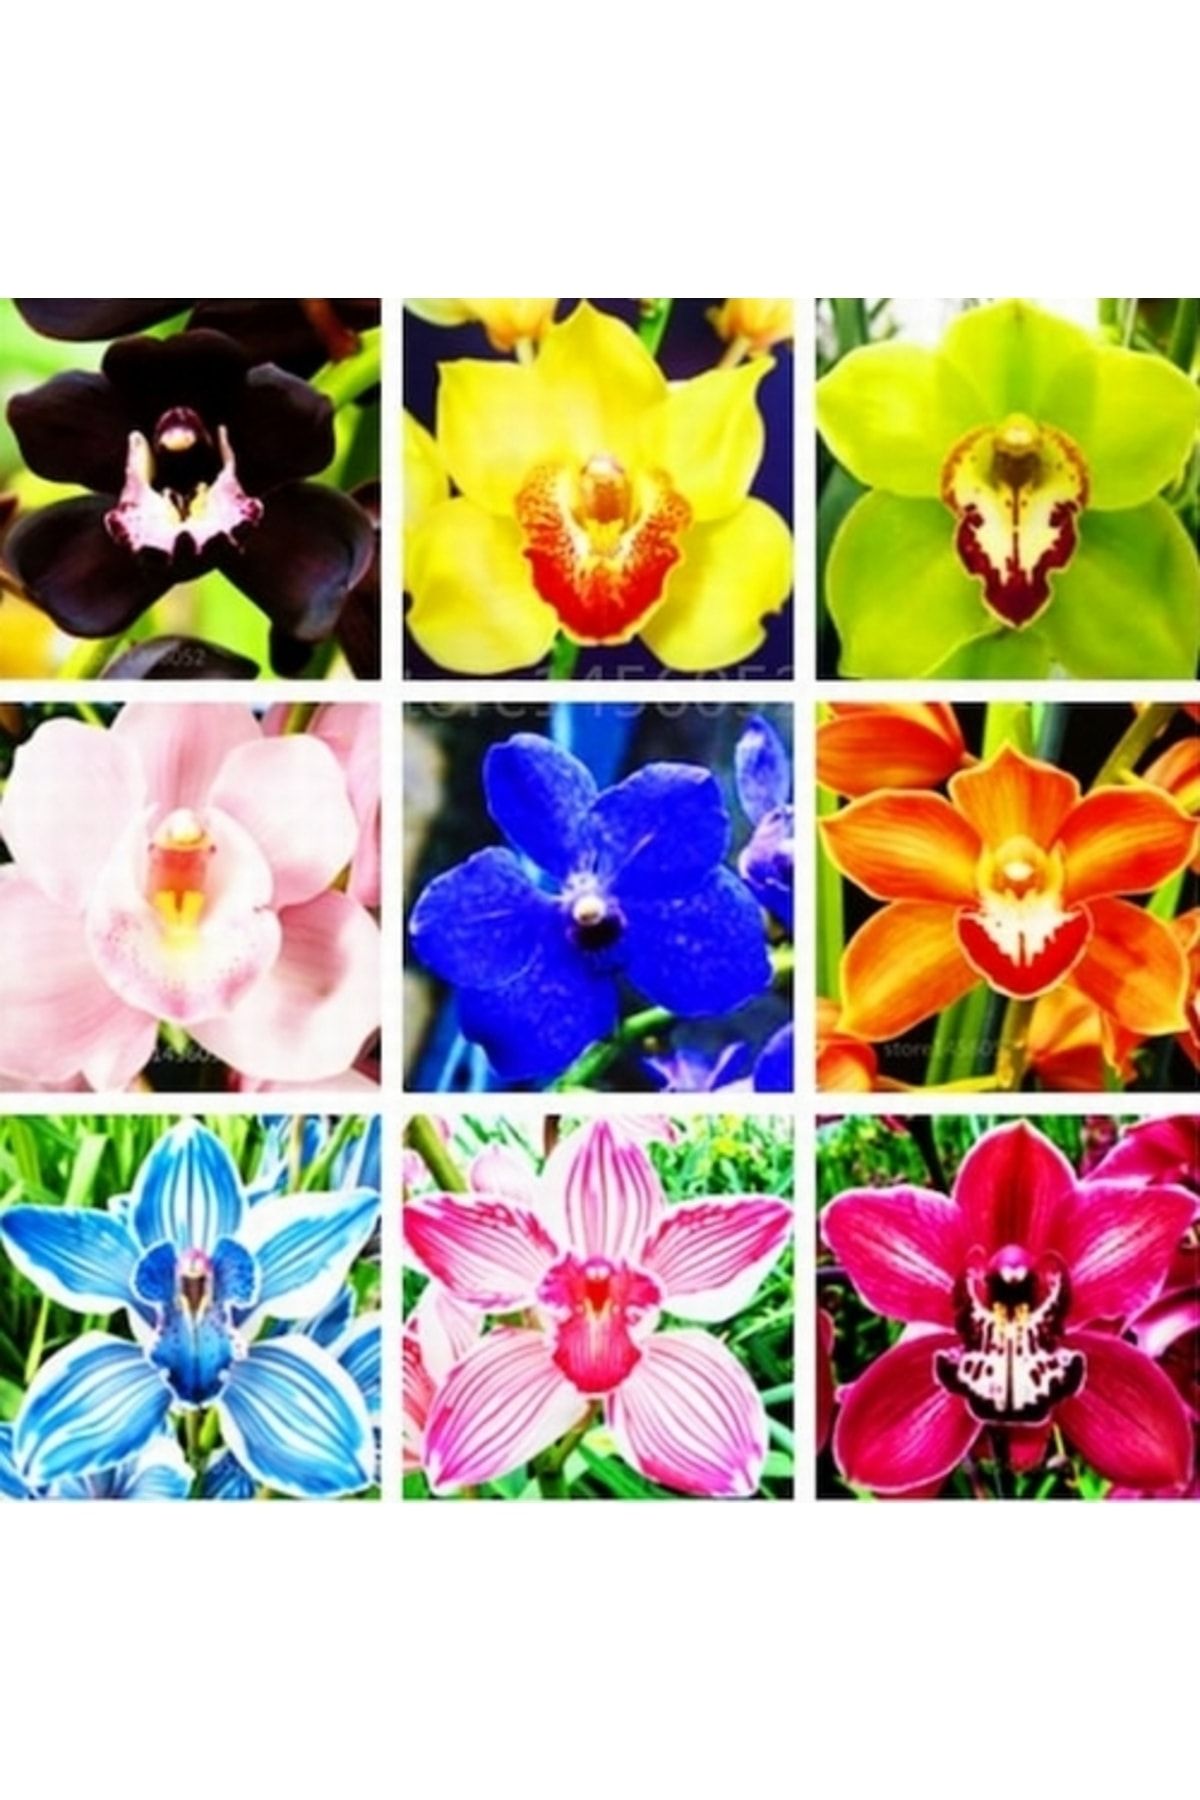 Day 100 Adet 10 FARKLI Renk Cattleya Orkide Tohumu + 10 Adet HEDİYE Gökkuşağı Gül Tohumu